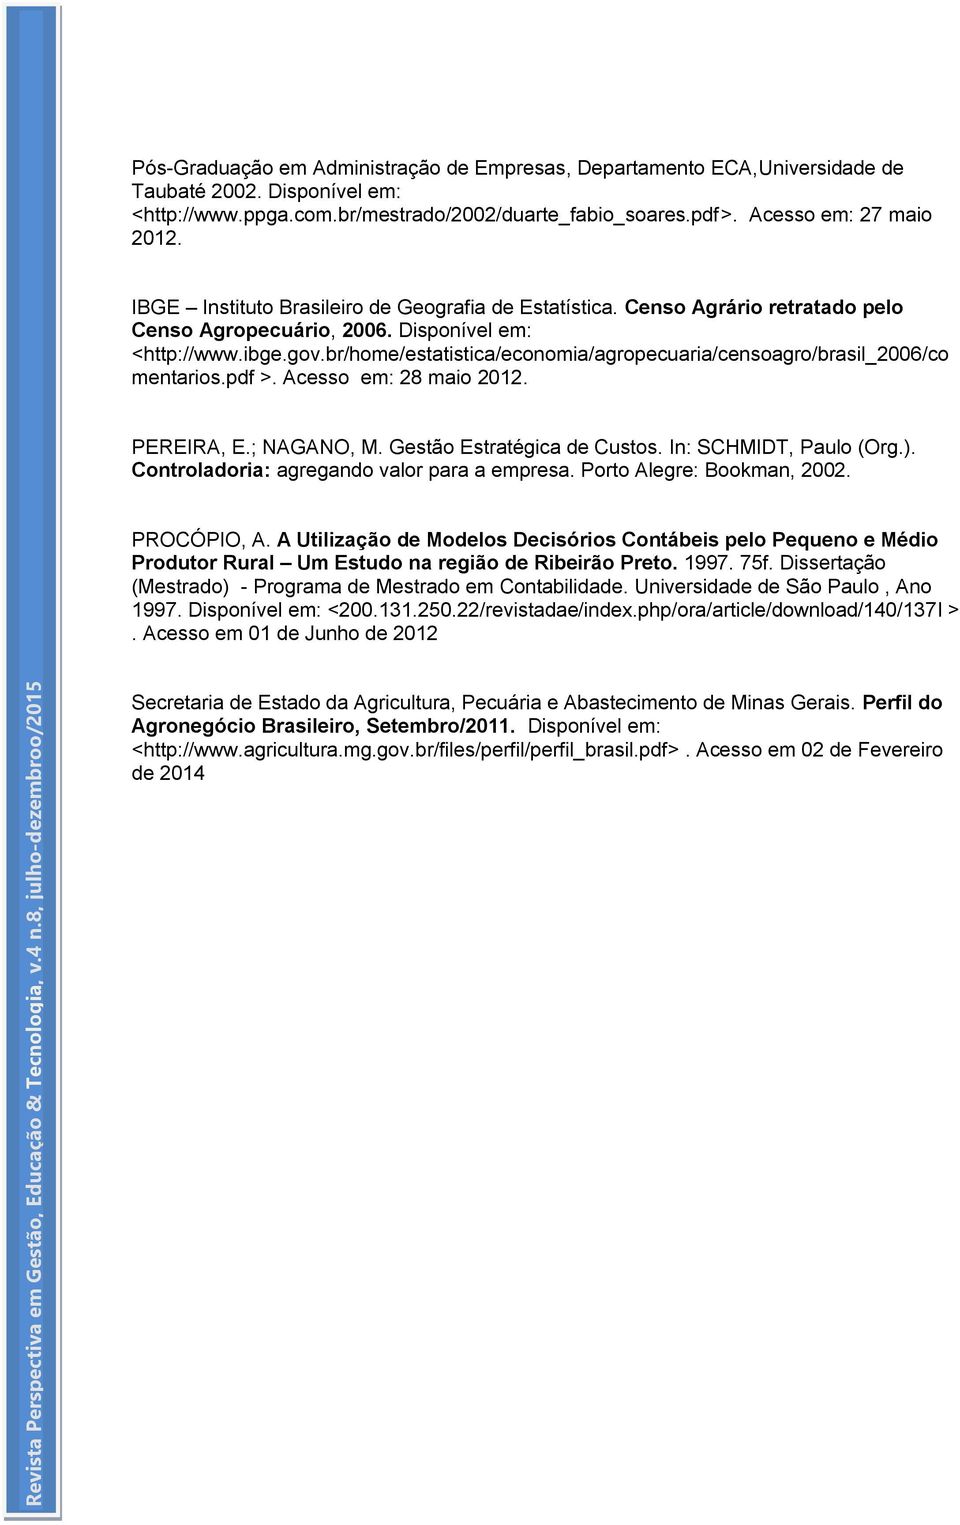 br/home/estatistica/economia/agropecuaria/censoagro/brasil_2006/co mentarios.pdf >. Acesso em: 28 maio 2012. PEREIRA, E.; NAGANO, M. Gestão Estratégica de Custos. In: SCHMIDT, Paulo (Org.).